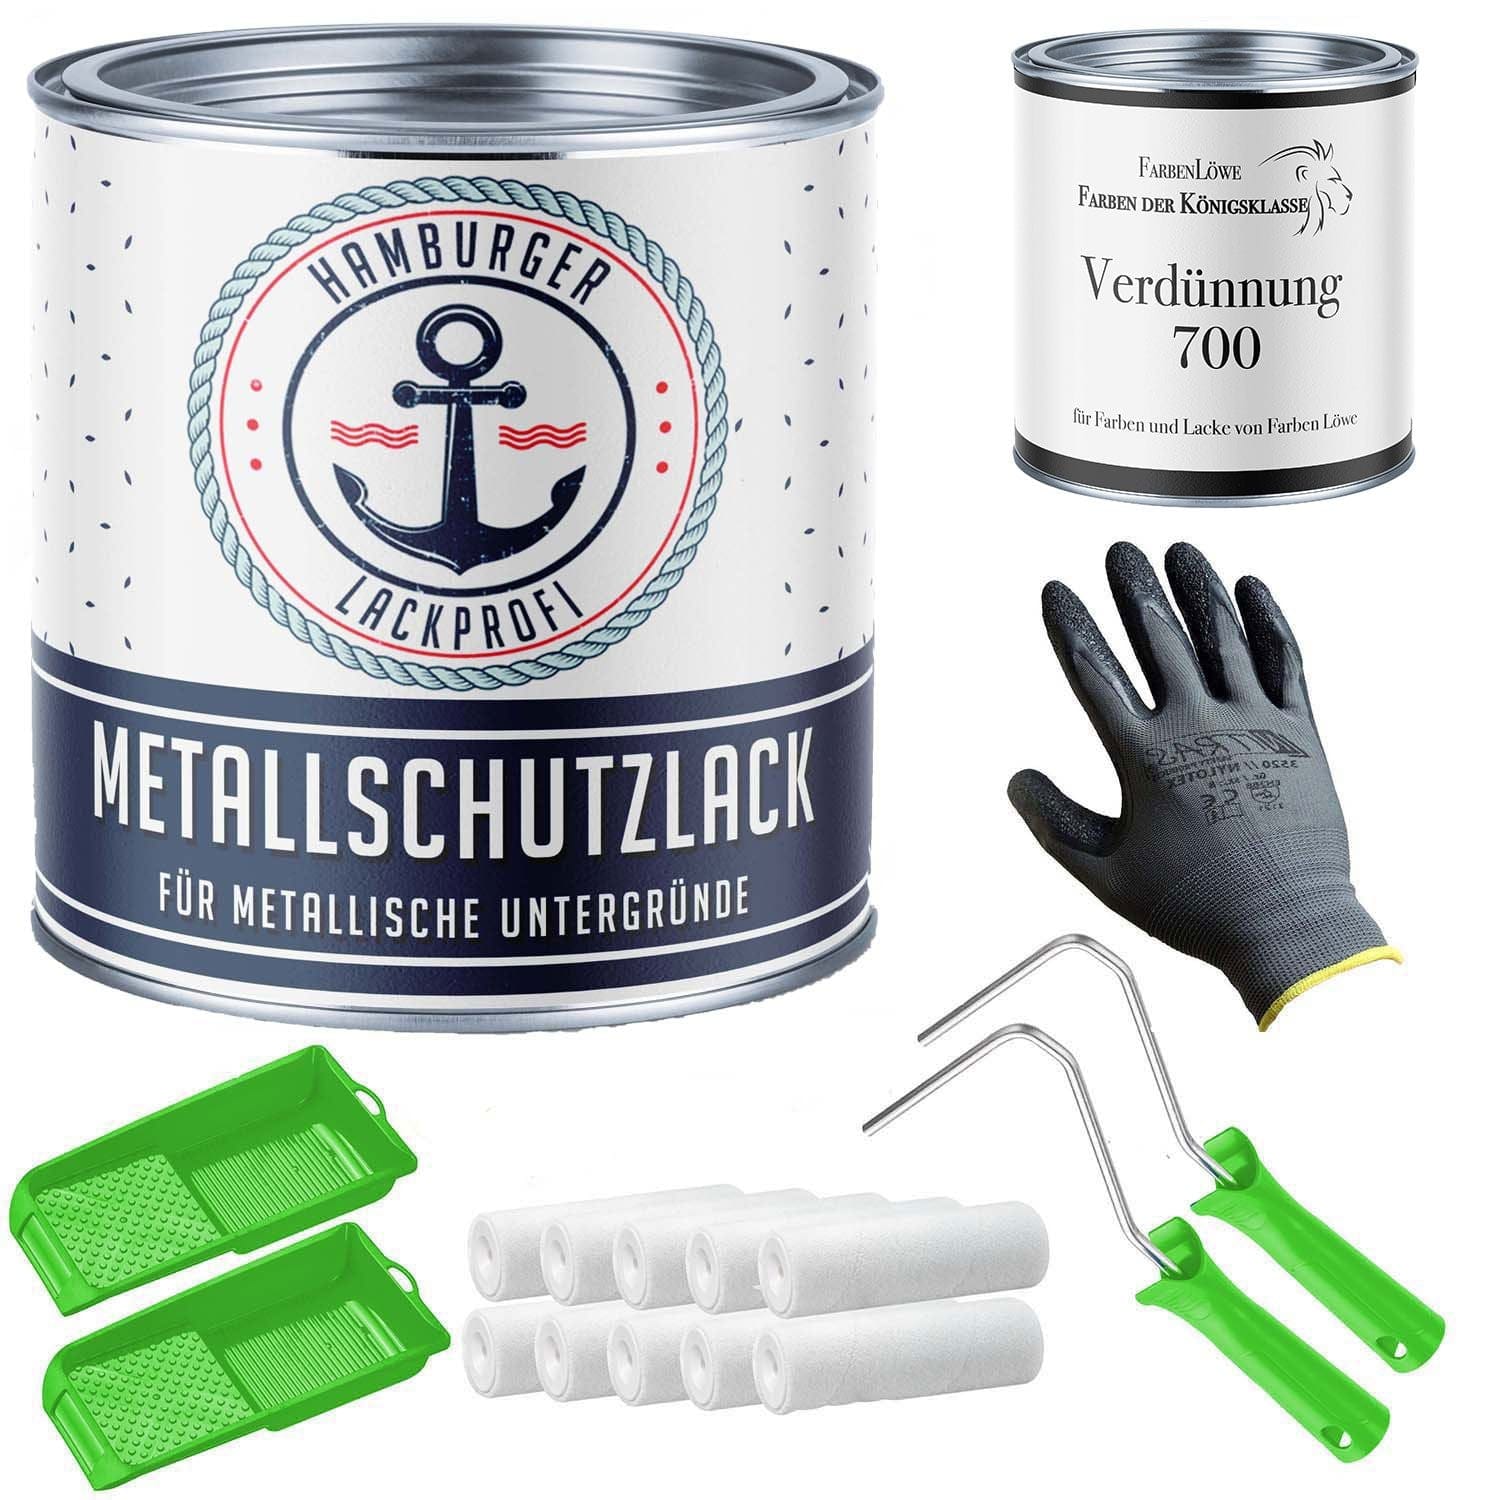 FARBENLÖWE Lacke & Beschichtungen Hamburger Lack-Profi Metallschutzlack in Ginstergelb RAL 1032 mit Lackierset (X300) & Verdünnung (1 L) - 30% Sparangebot